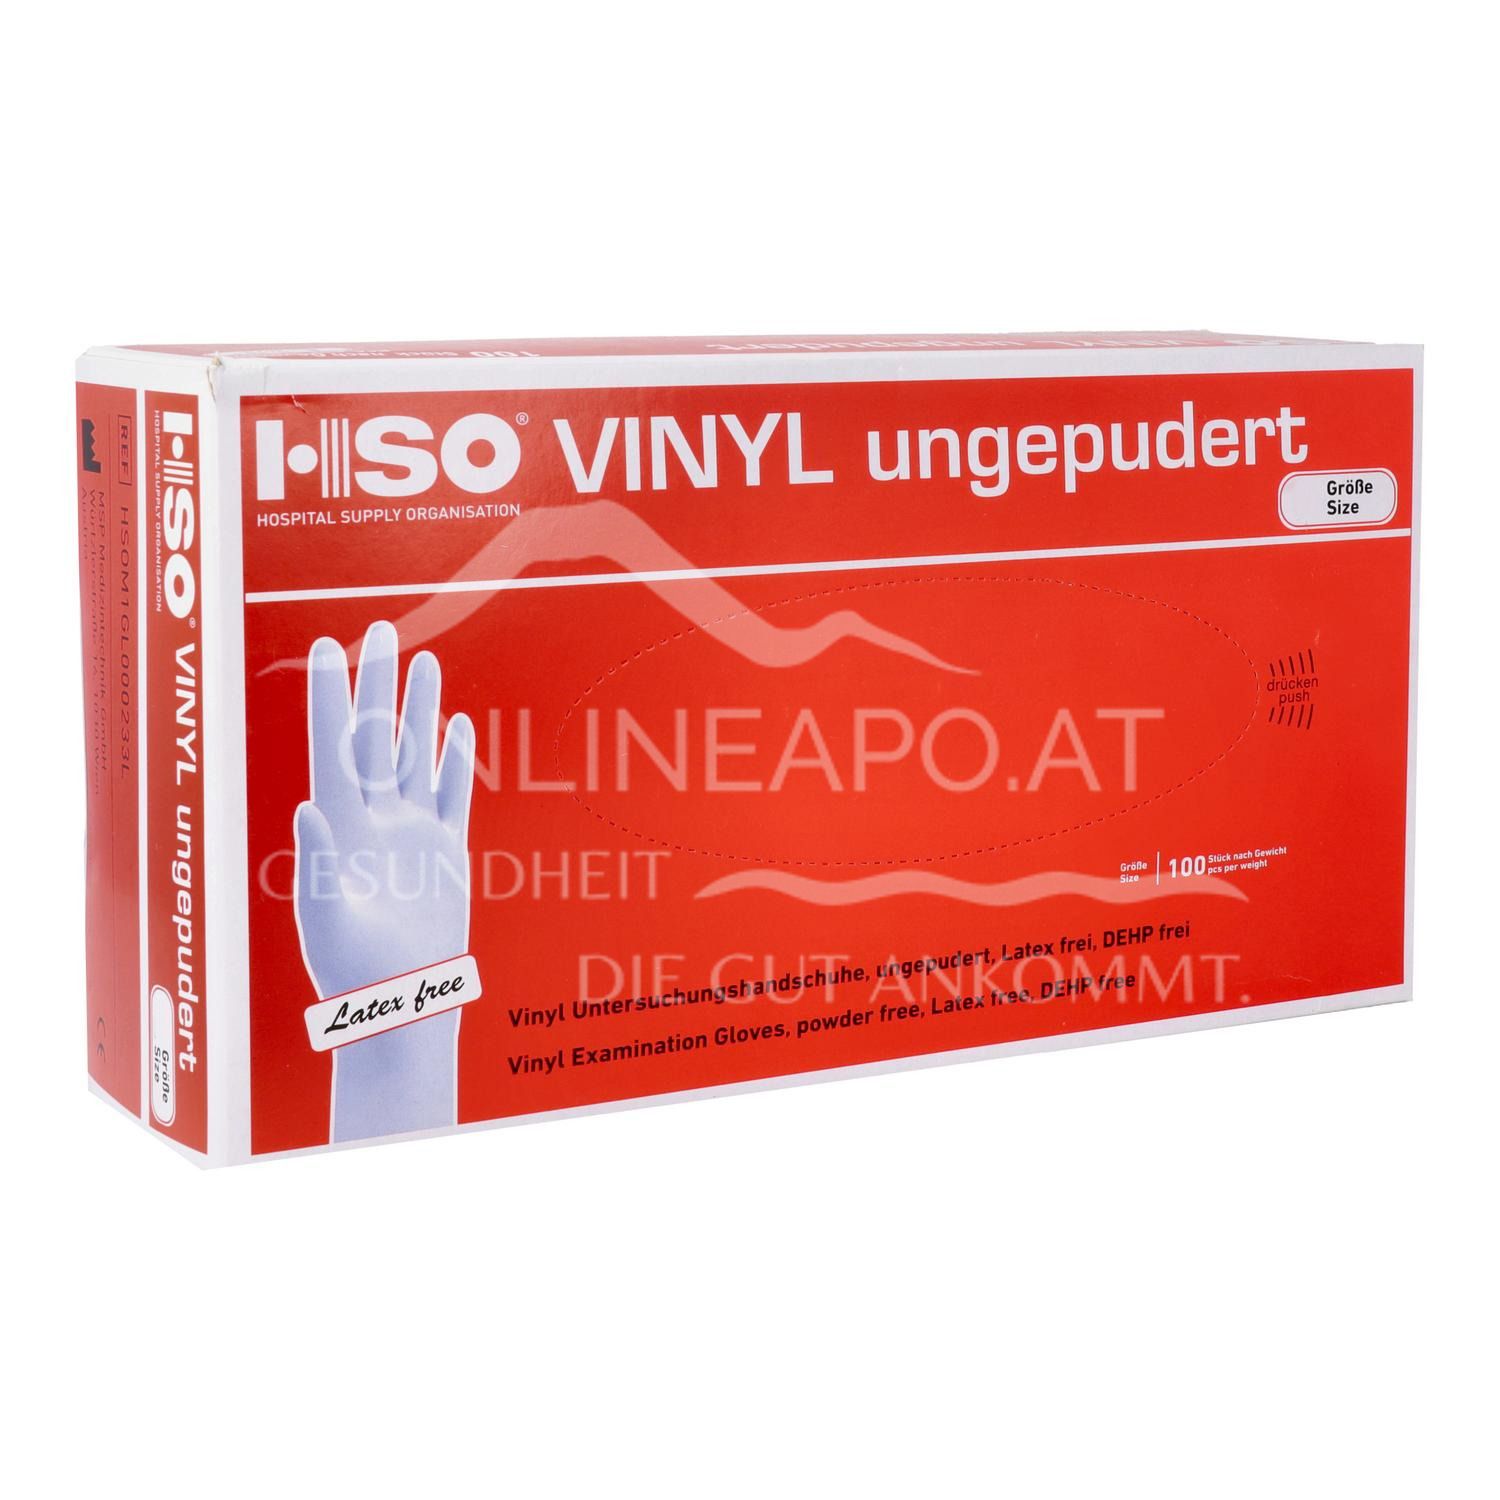 HSO Vinyl Untersuchungshandschuhe, ungepudert, latexfrei - Größe S